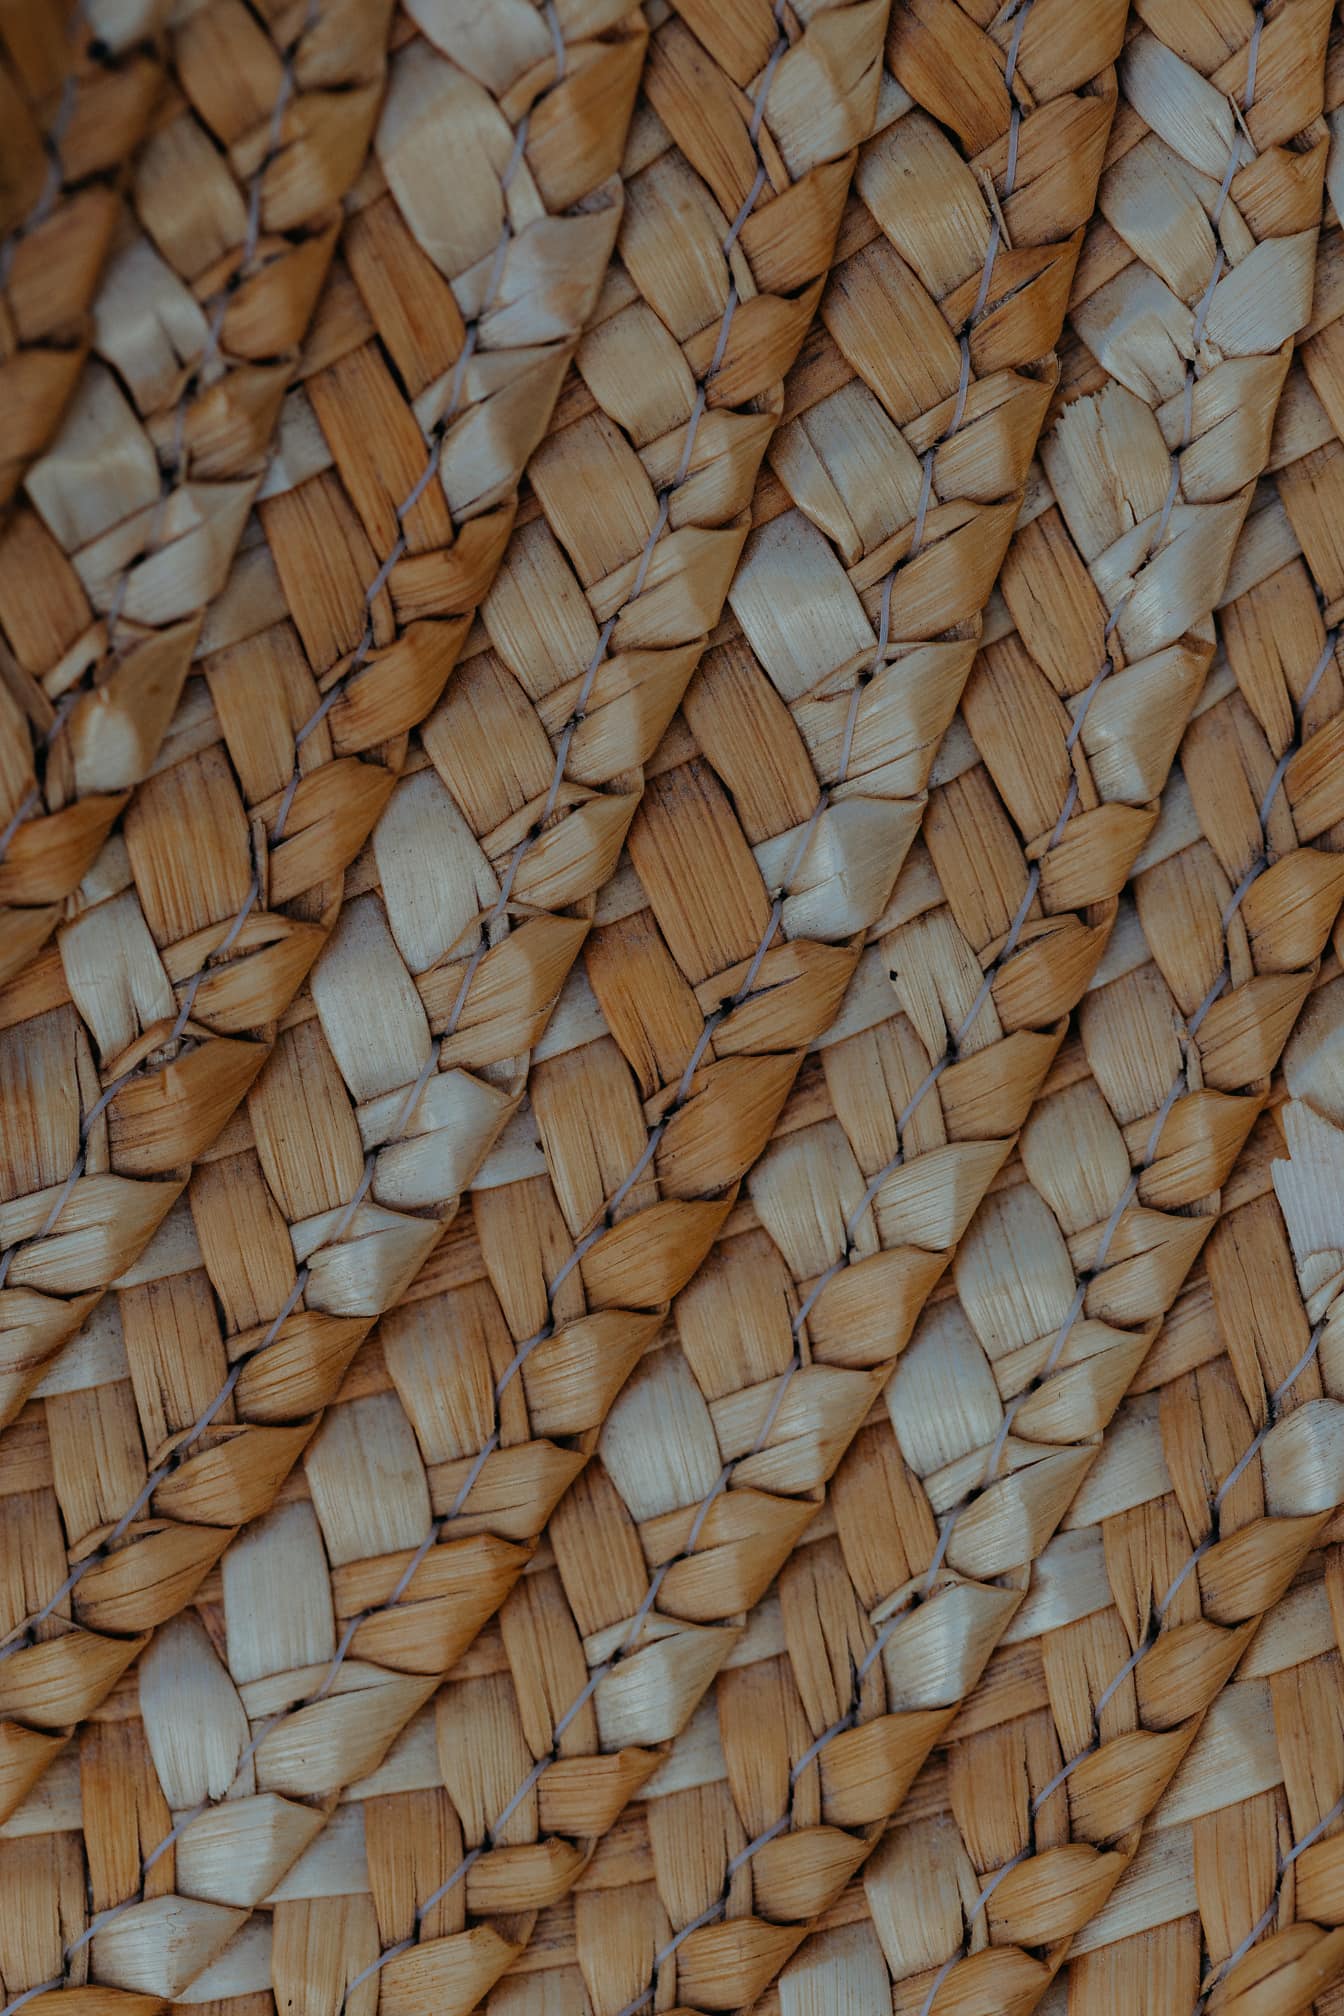 Textura de una cesta de mimbre tejida de color marrón amarillento